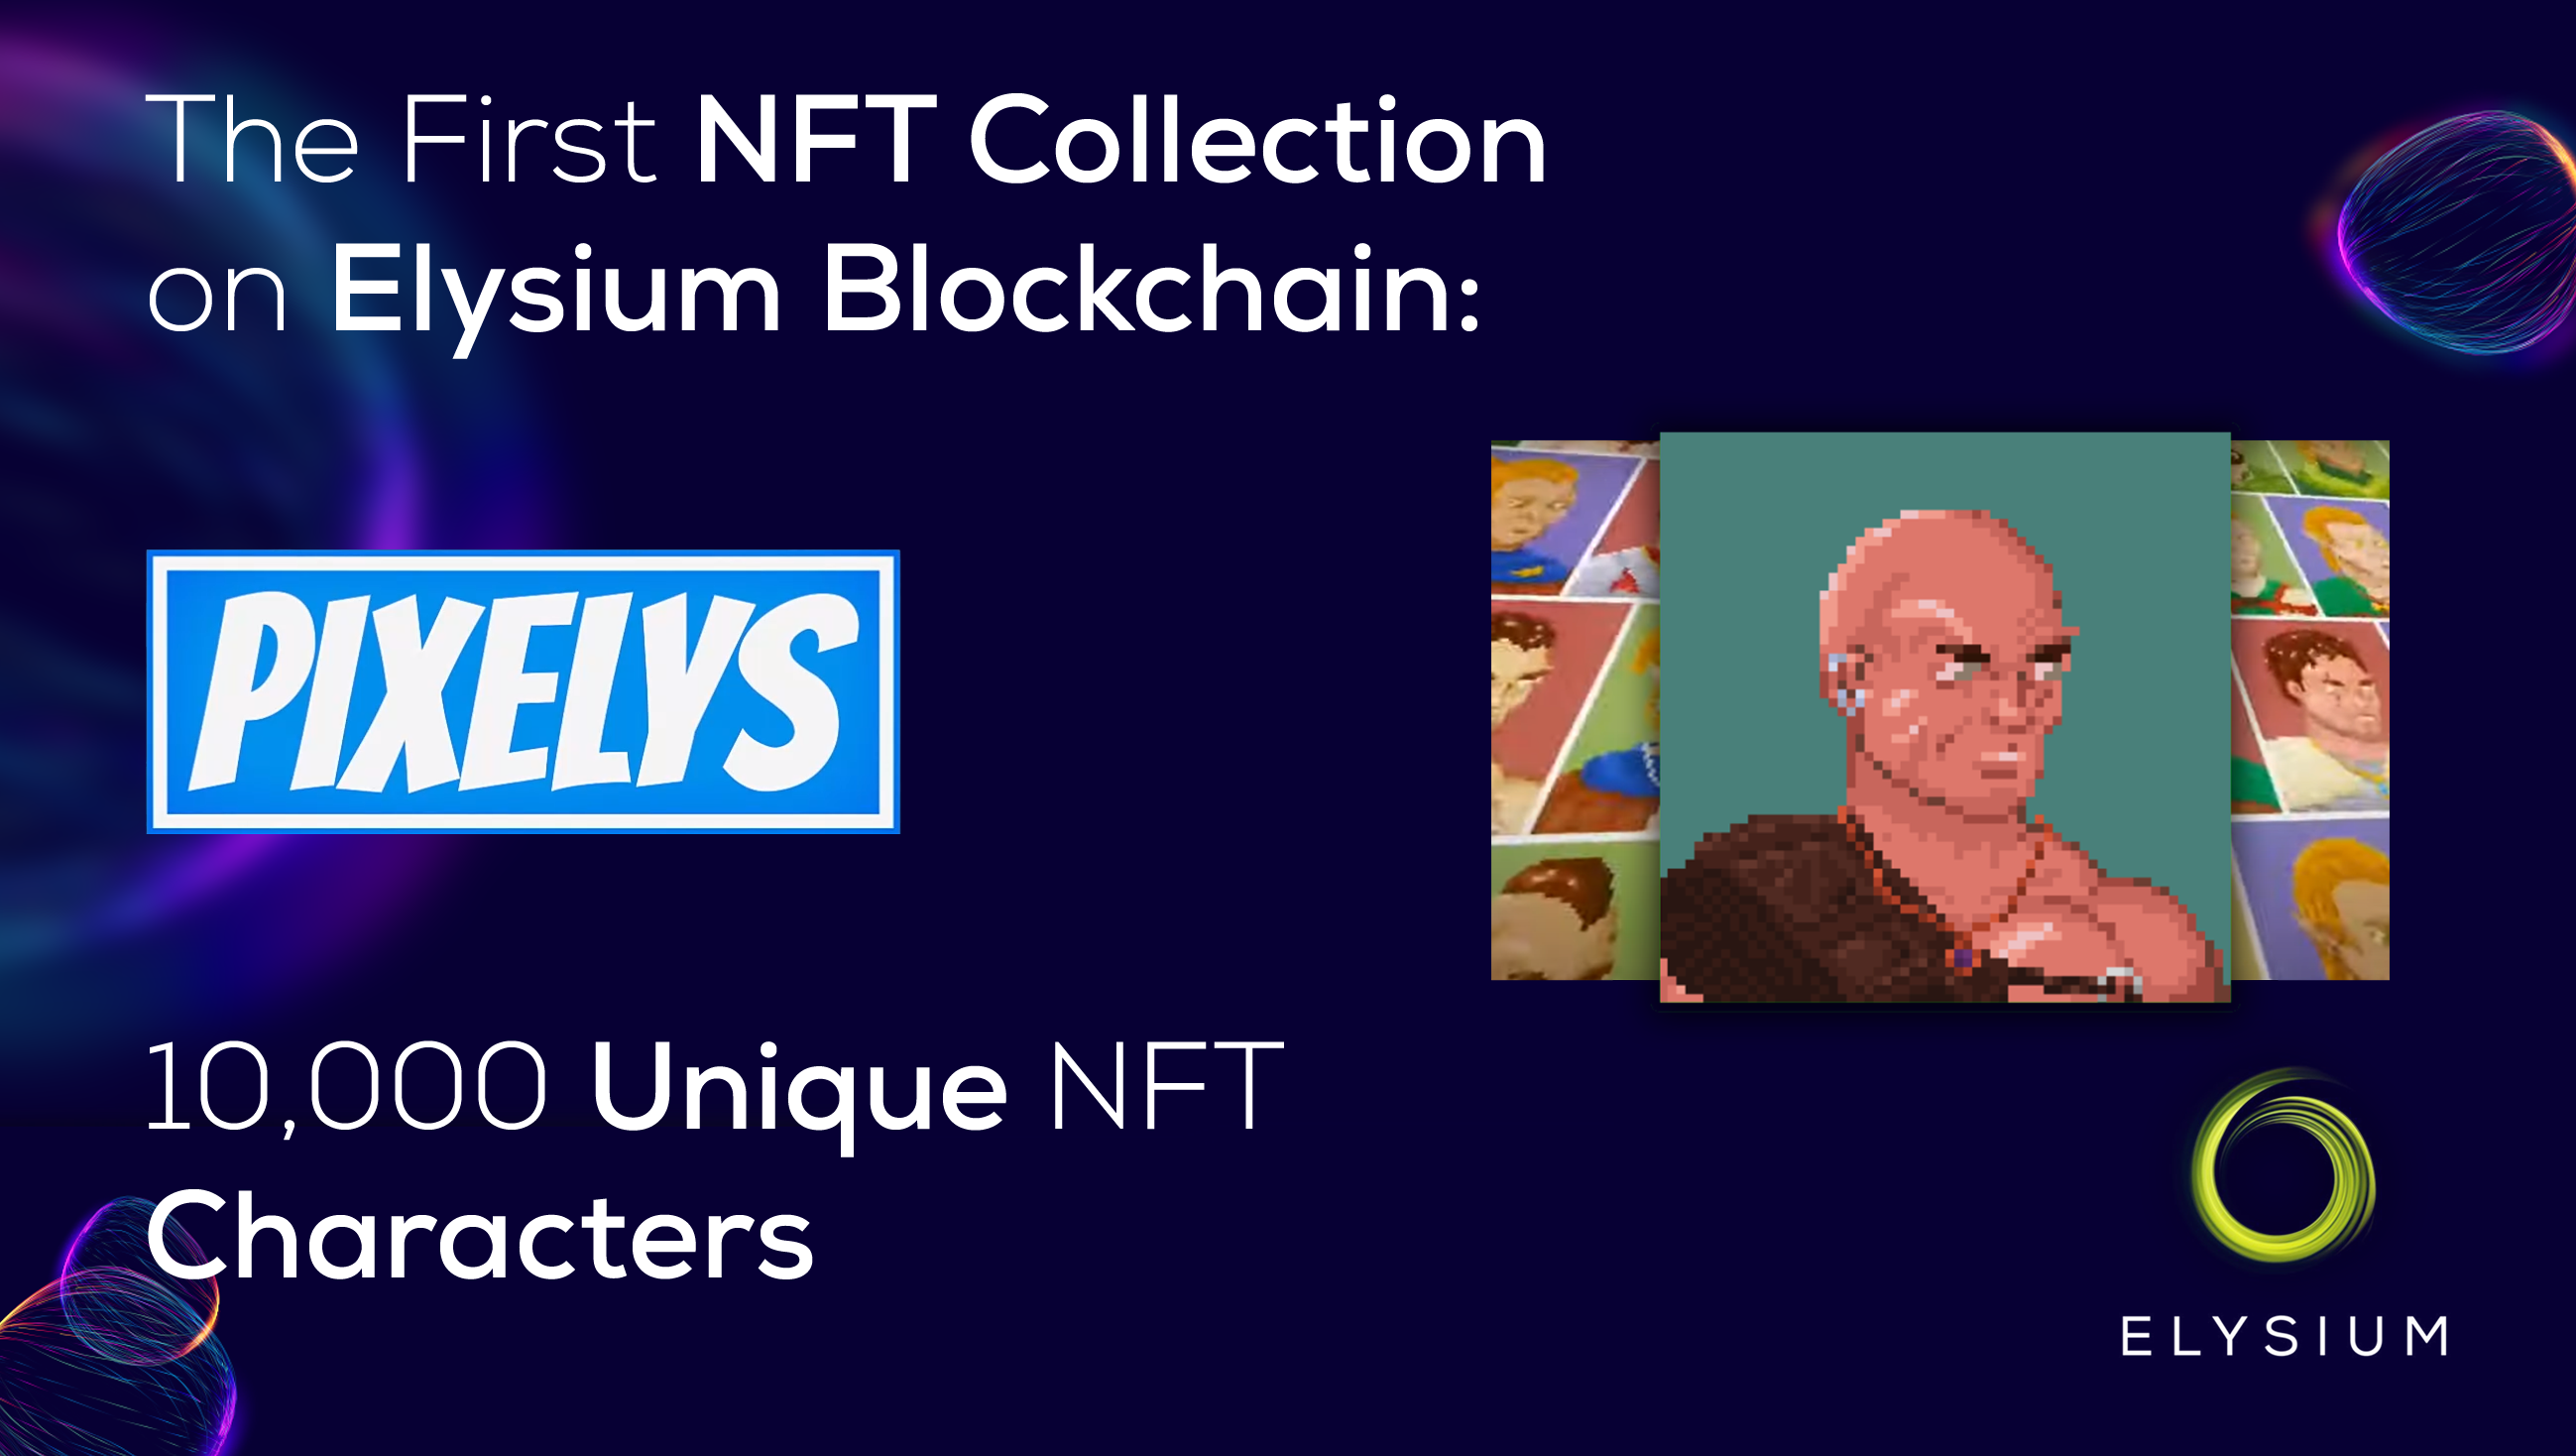 10,000 unique NFT characters - the Pixelys